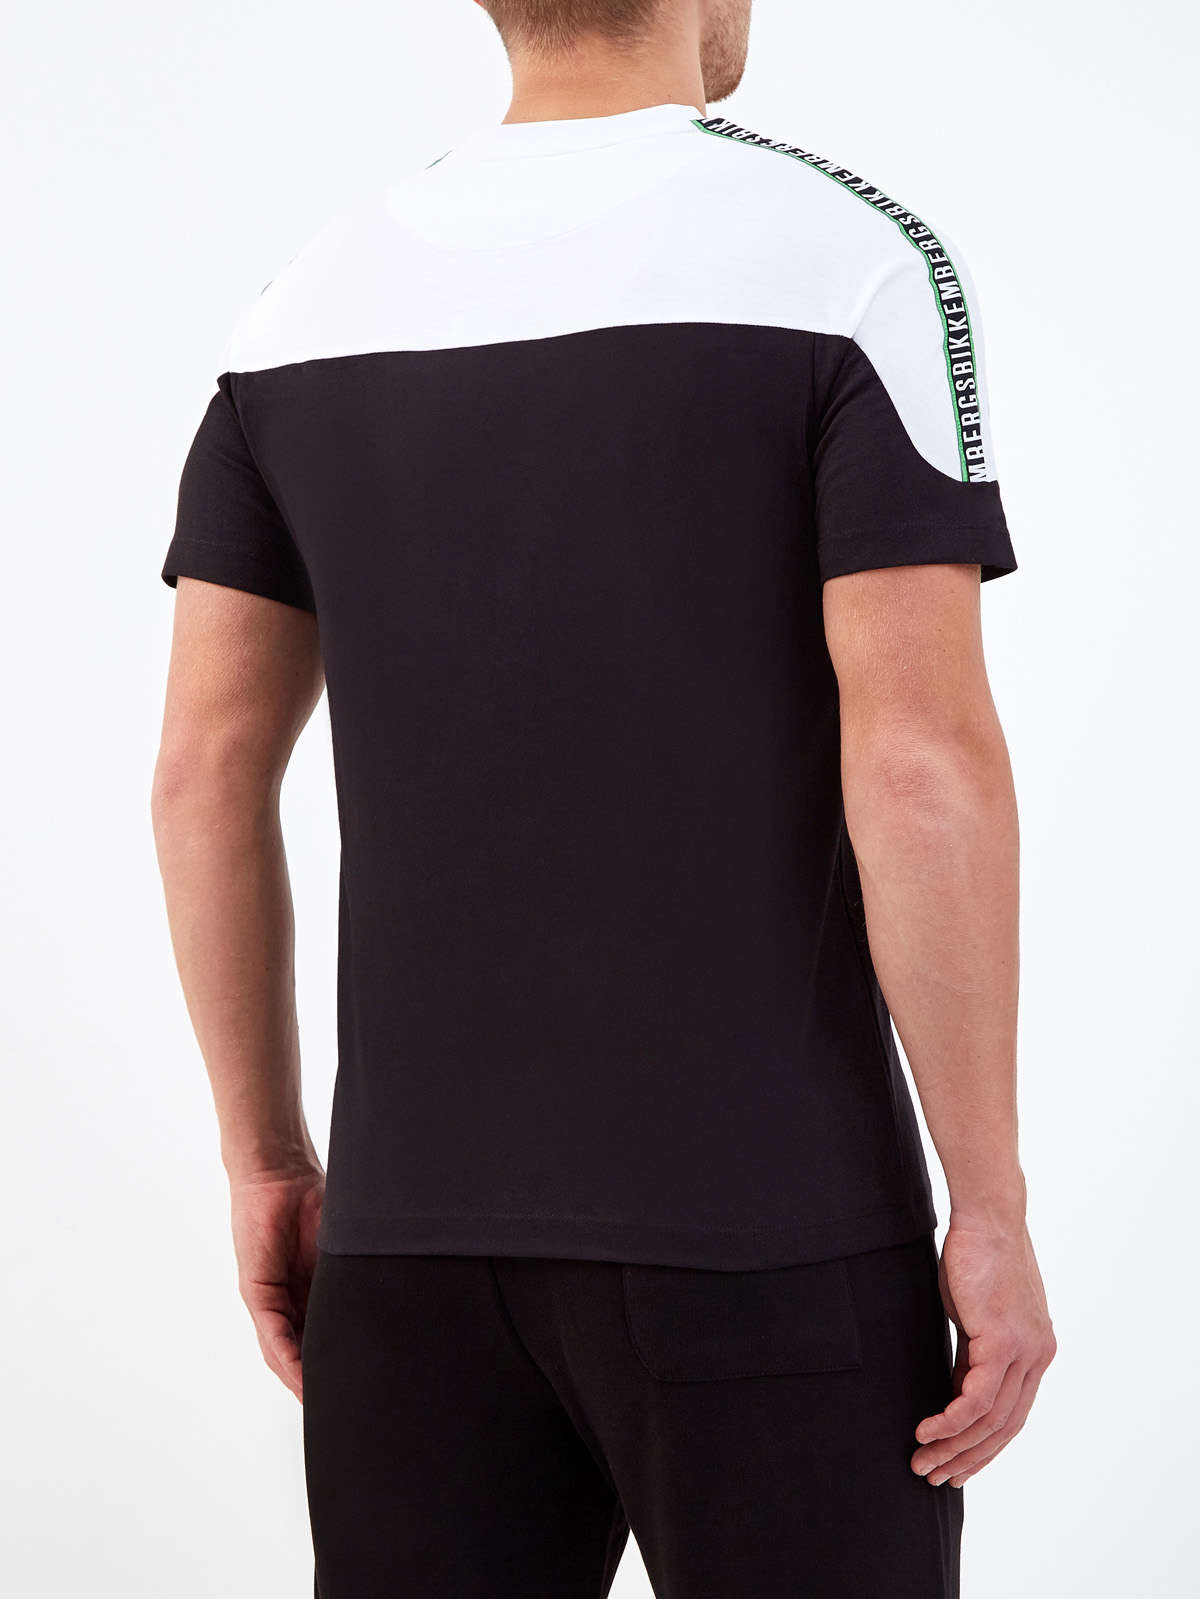 Хлопковая футболка в стиле colorblock с лентой-аппликацией BIKKEMBERGS, цвет черно-белый, размер S;M;L;XL;2XL;3XL - фото 4